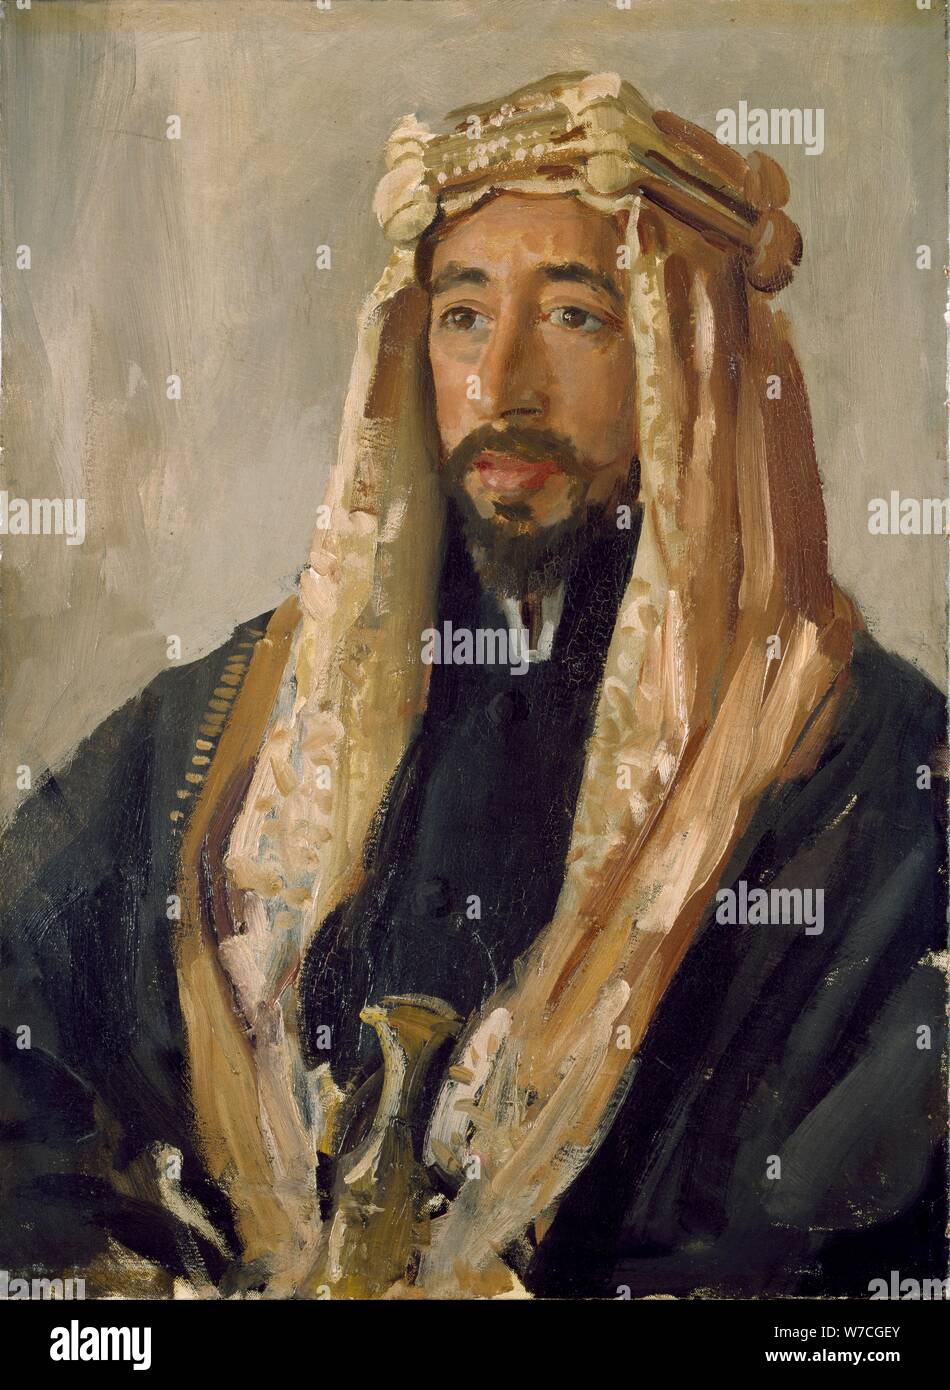 The Emir Feisal, 1919. Artist: Augustus John. Stock Photo